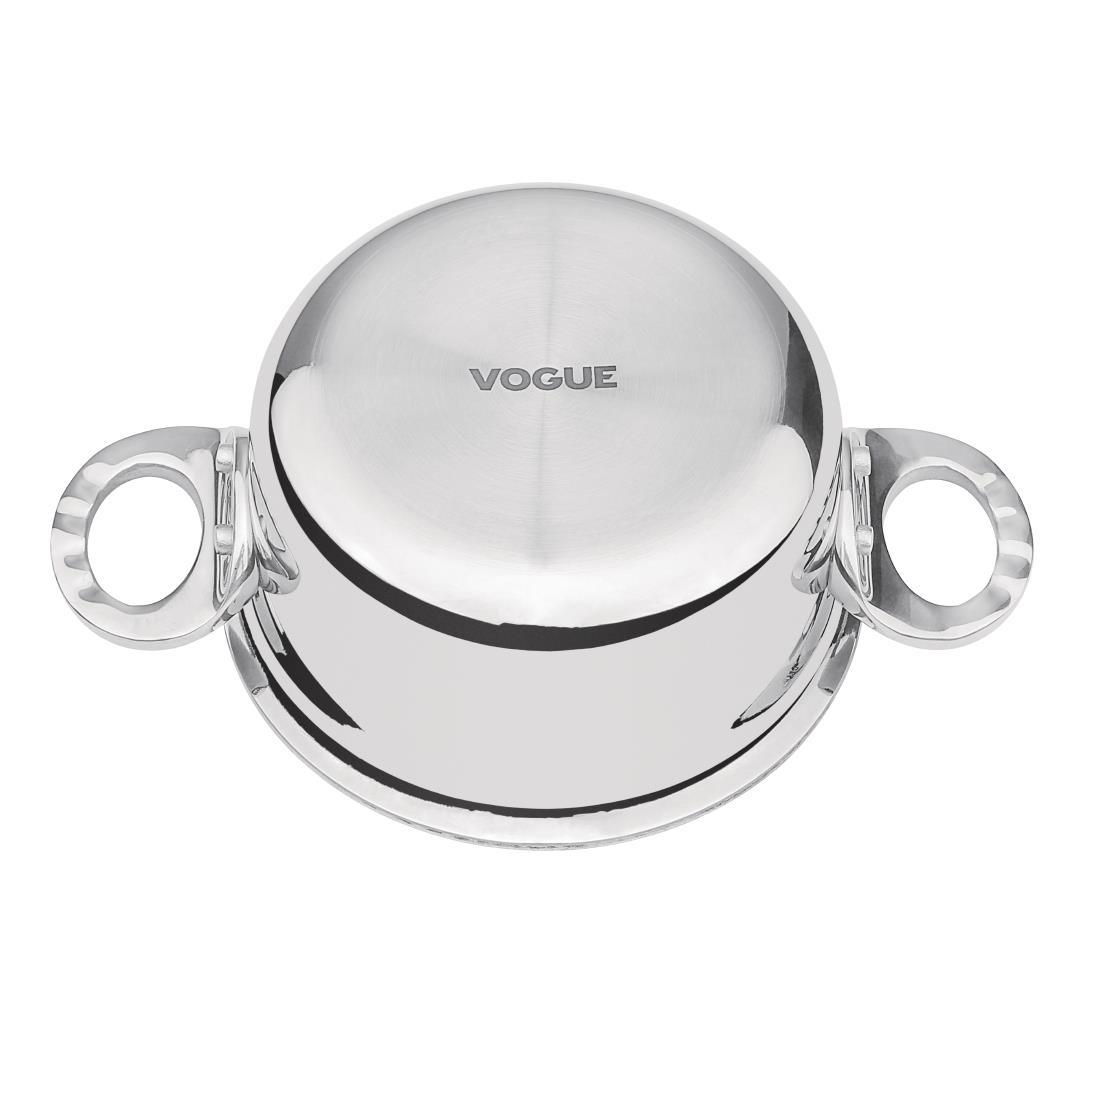 Vogue Tri Wall Mini Casserole 0.44Ltr - GG026  - 3